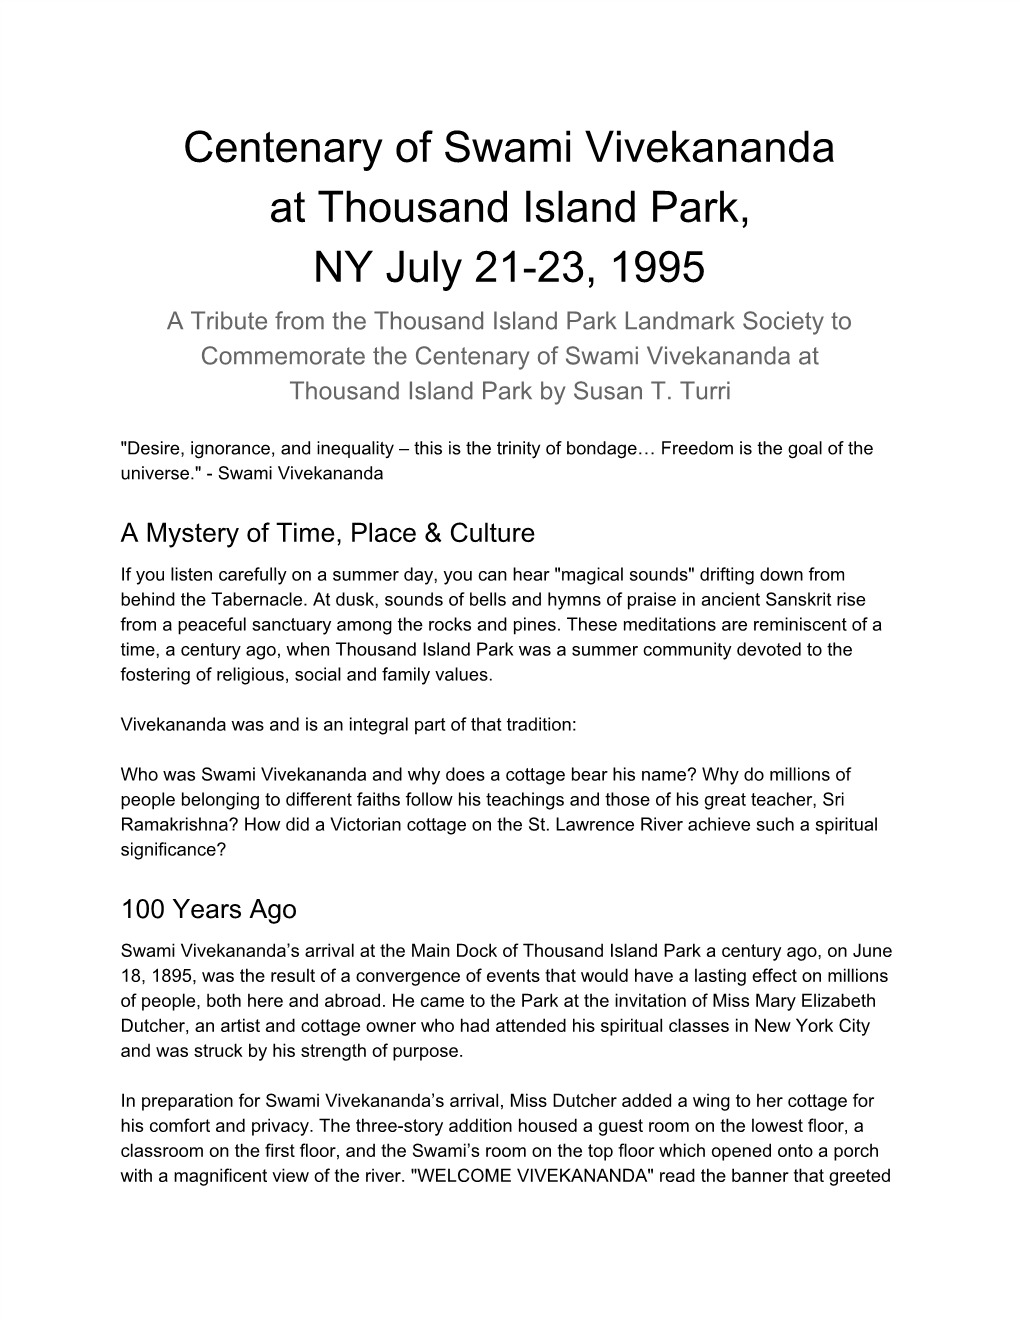 Centenary of Swami Vivekananda at Thousand Island Park, NY July 21